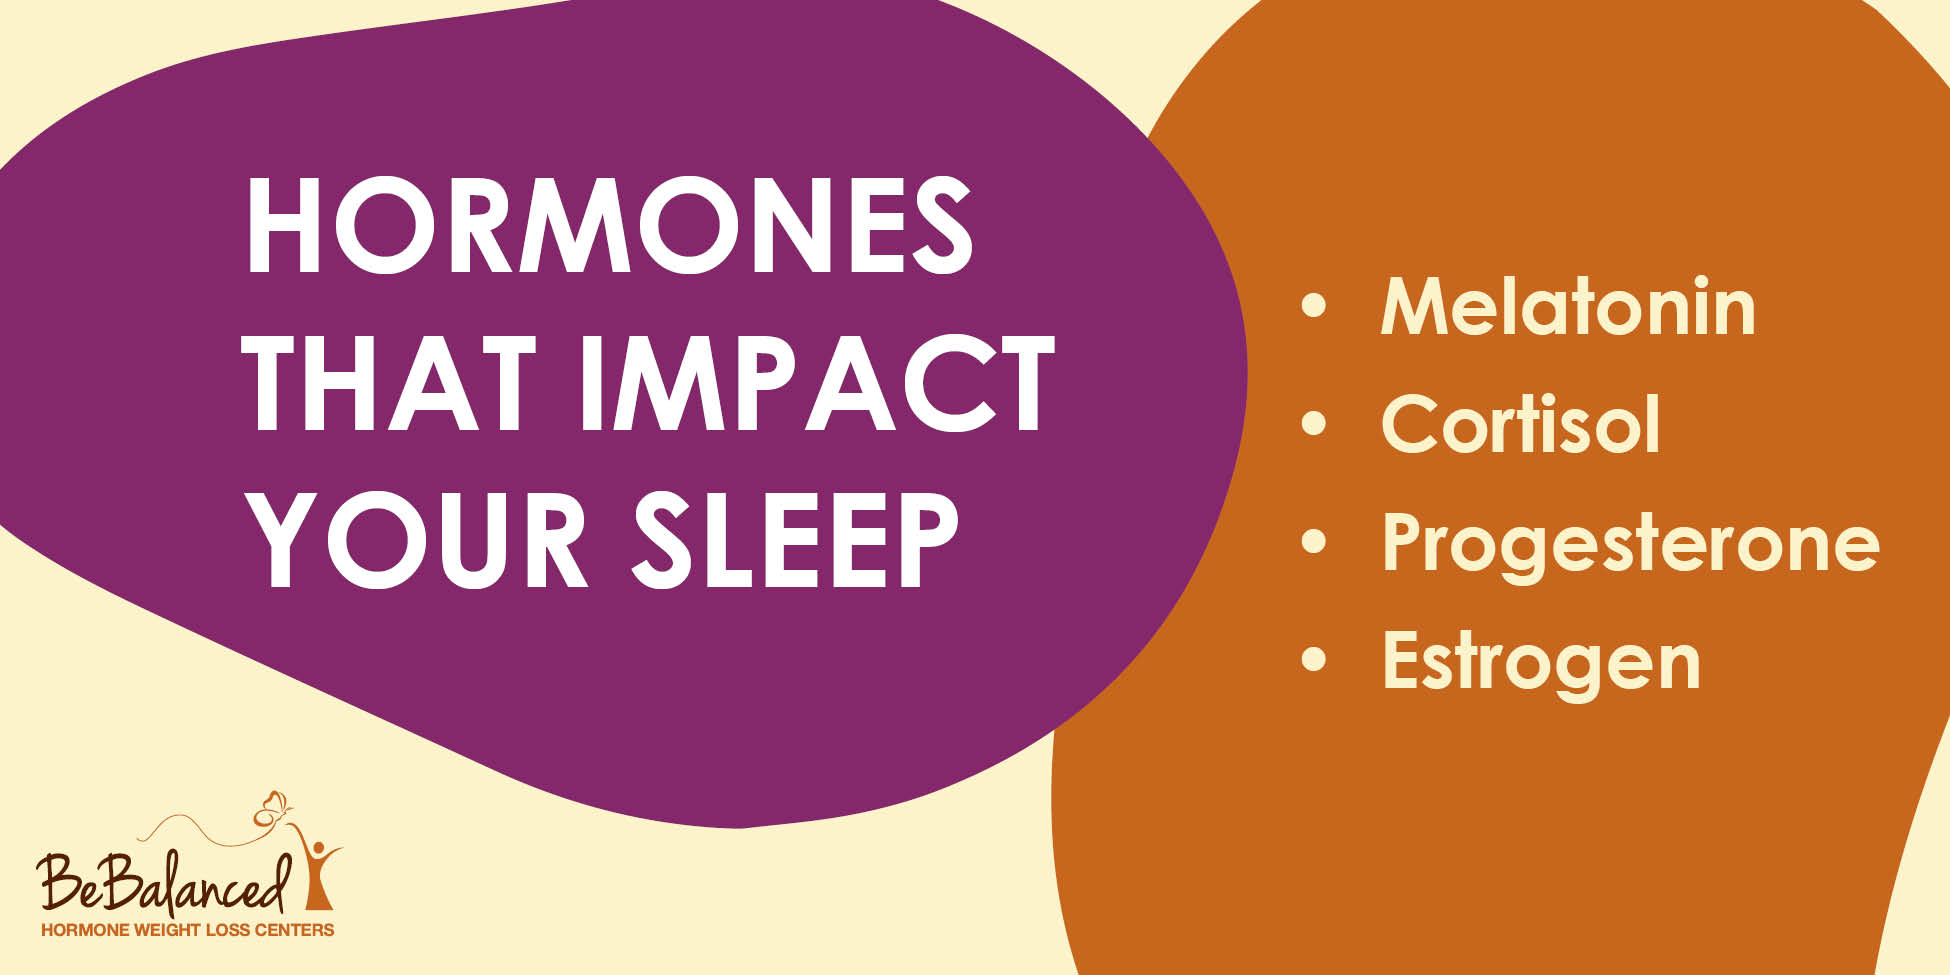 Hormones that impact your sleep